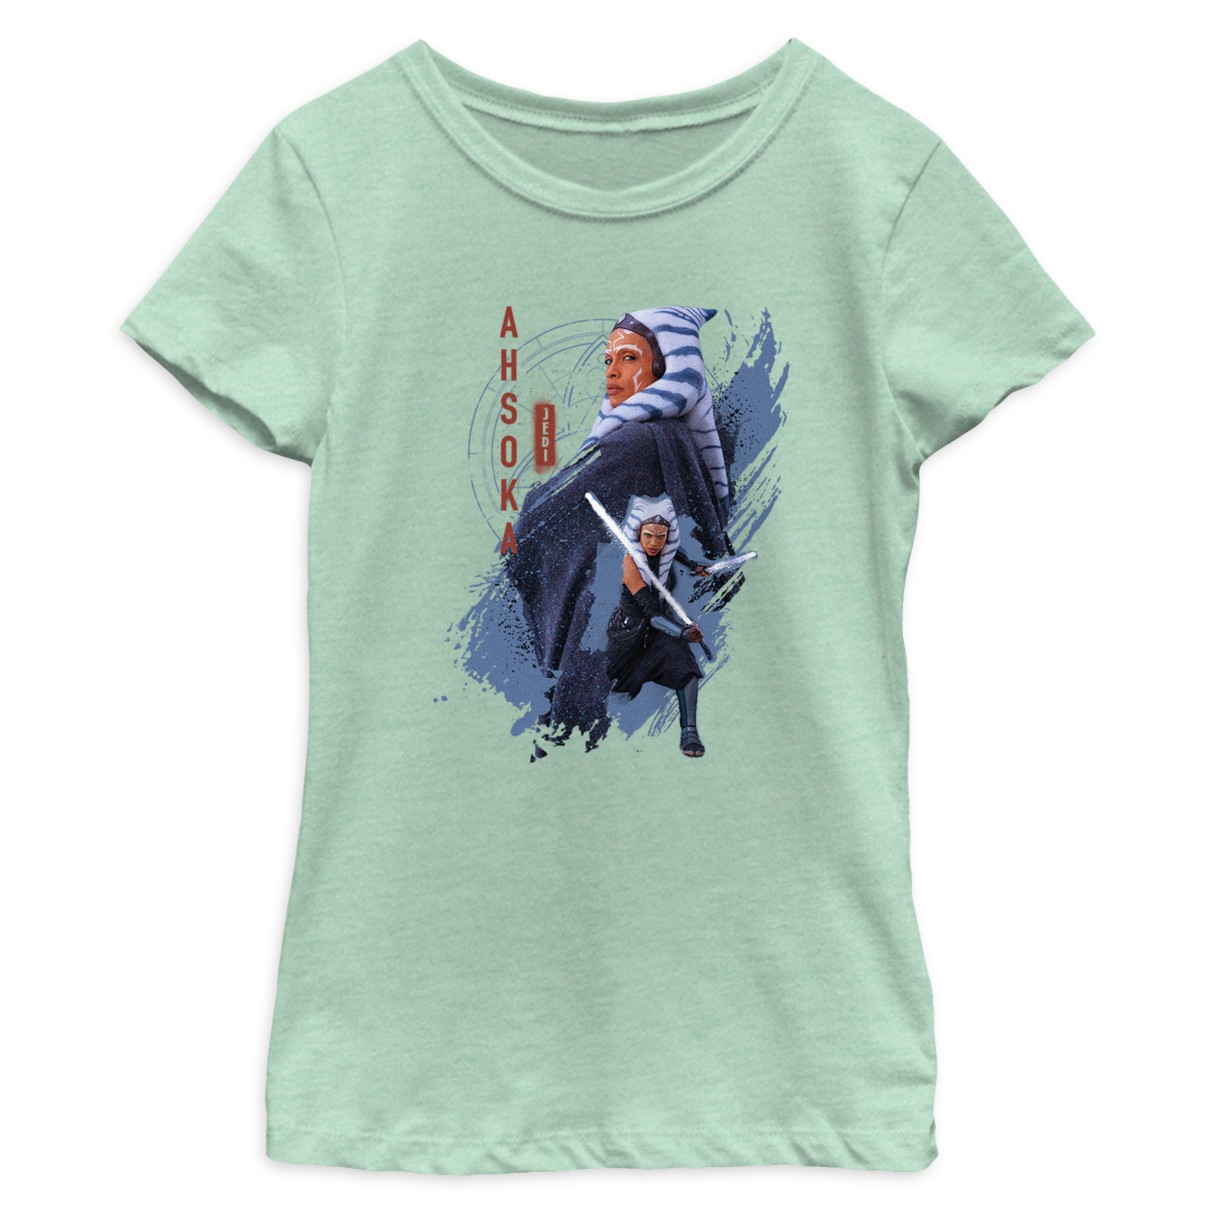 Ahsoka Tano ''Jedi'' T-Shirt for Kids – Star Wars: Ahsoka